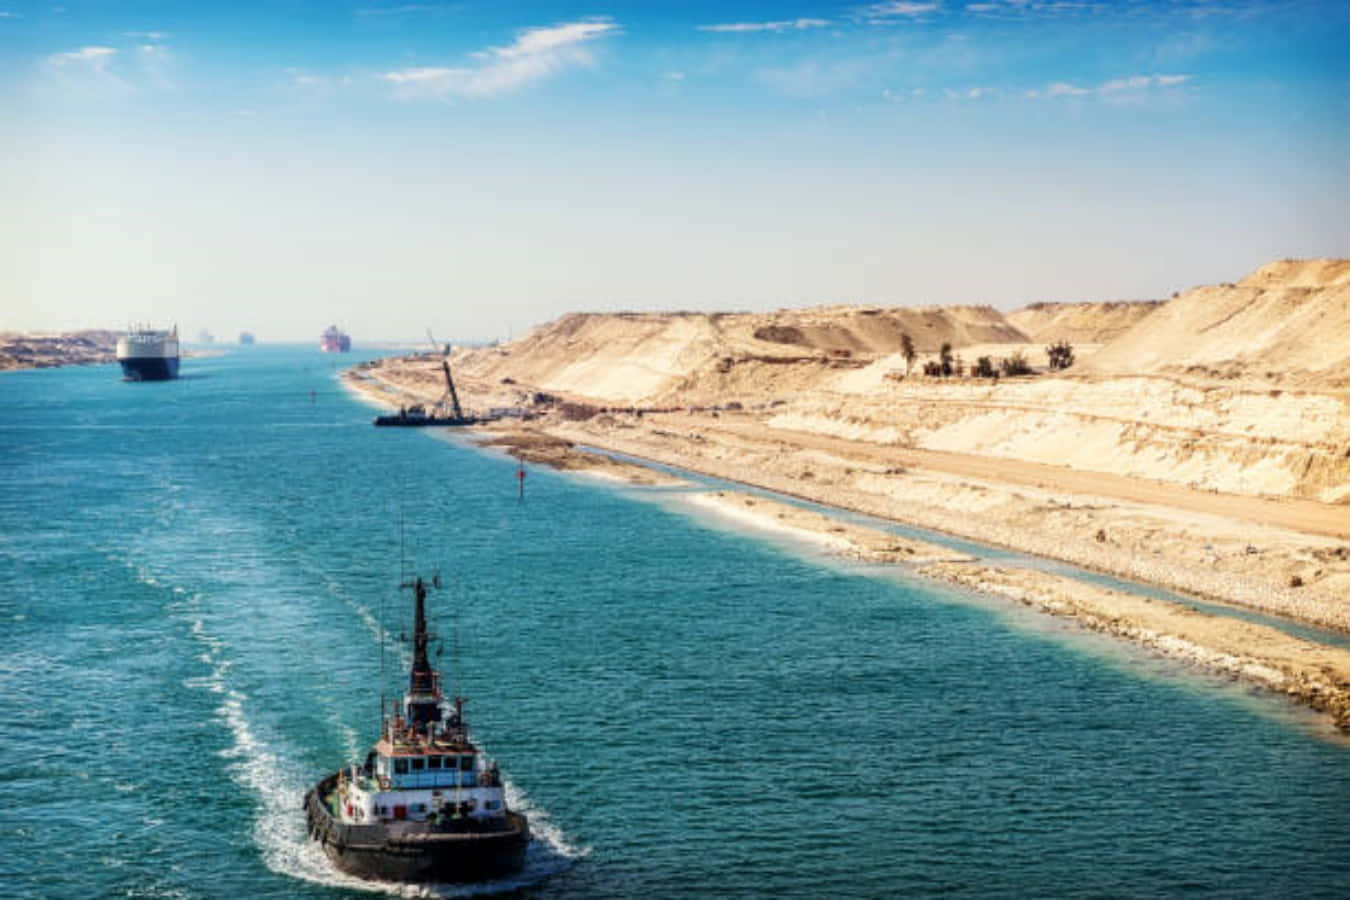 Naviche Passano Attraverso Il Canale Di Suez, Una Rotta Commerciale Vitale Che Collega Il Mar Mediterraneo Al Mar Rosso.